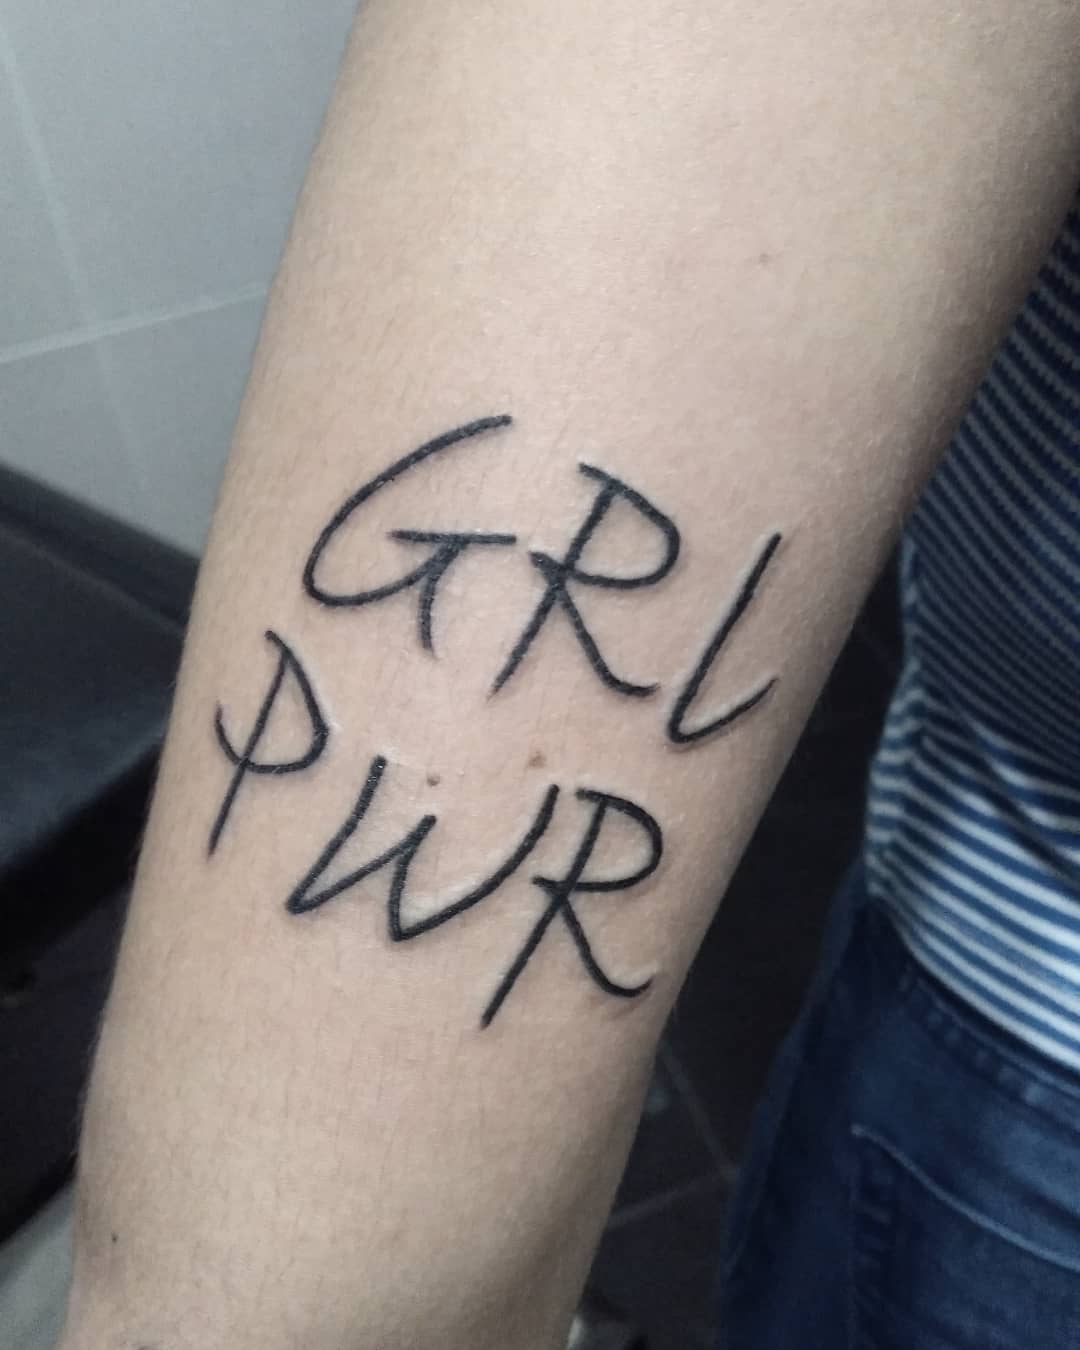 Girl Power lettering feminism tattoo. Pic by andresantxstattoo